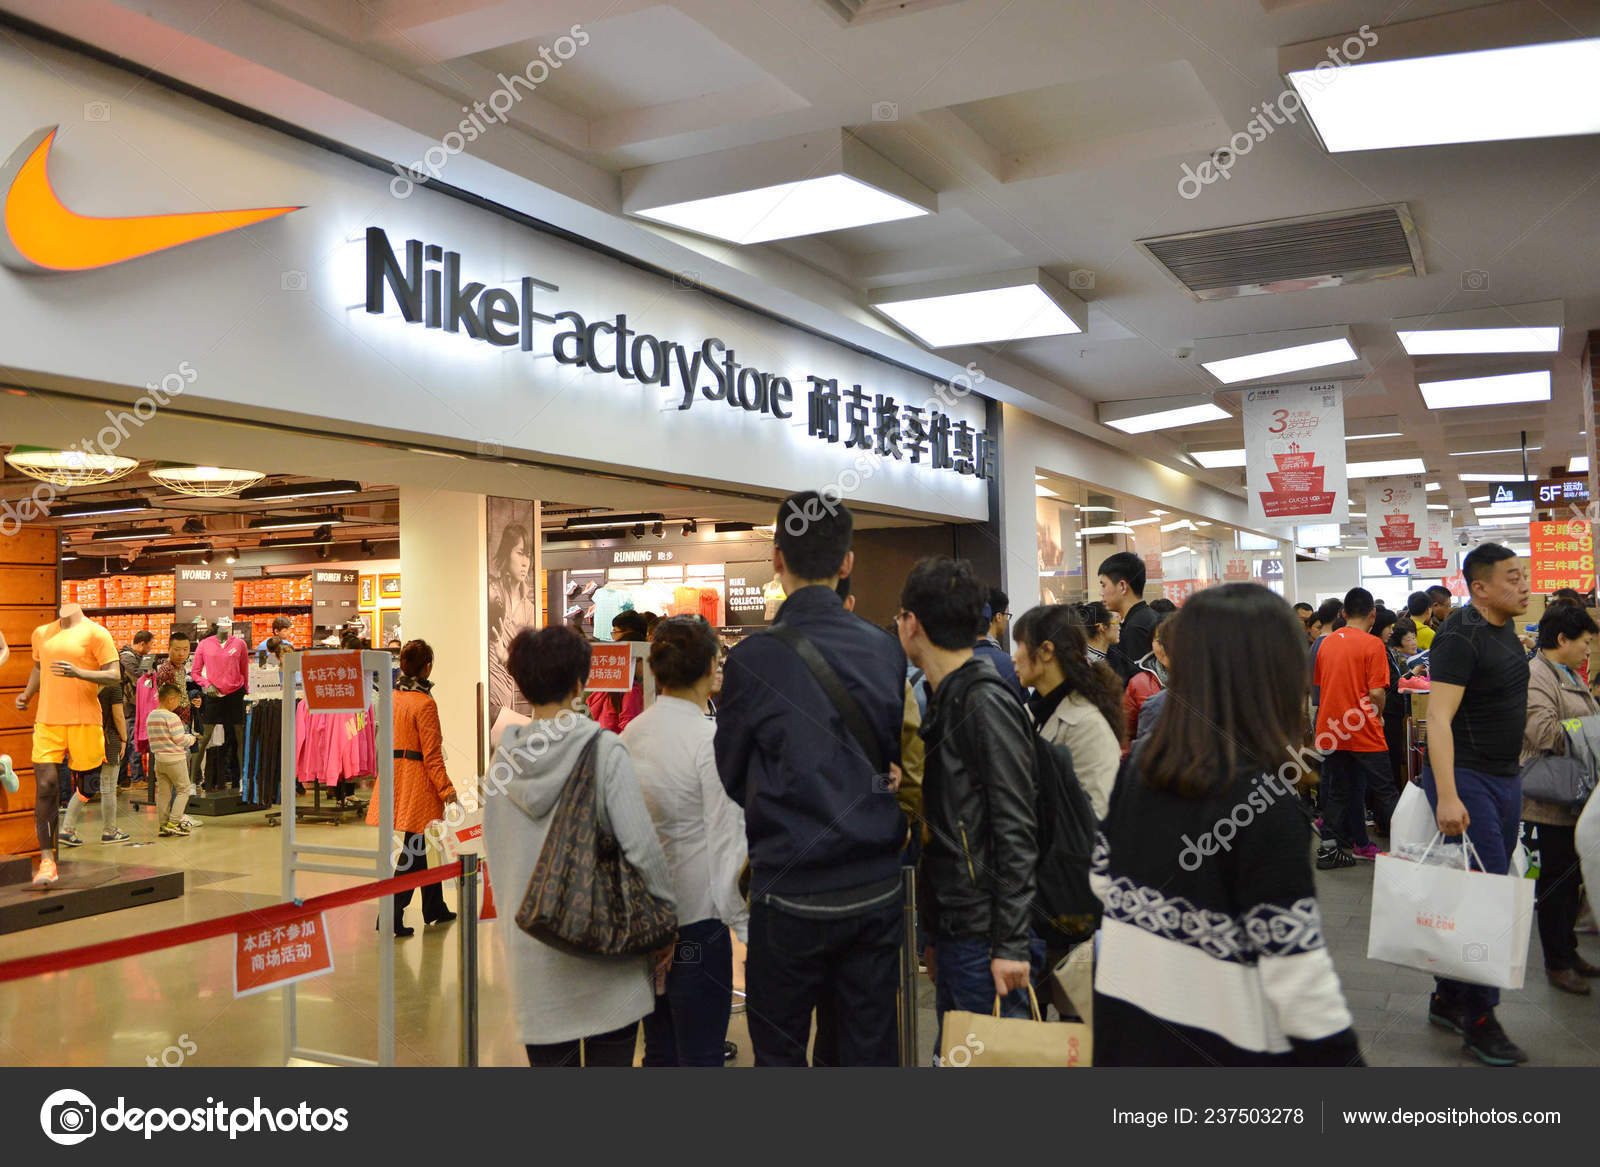 Fuera de borda Certificado algodón Clientes Chinos Hacen Cola Frente Una Tienda Nike Factory Store — Foto  editorial de stock © ChinaImages #237503278